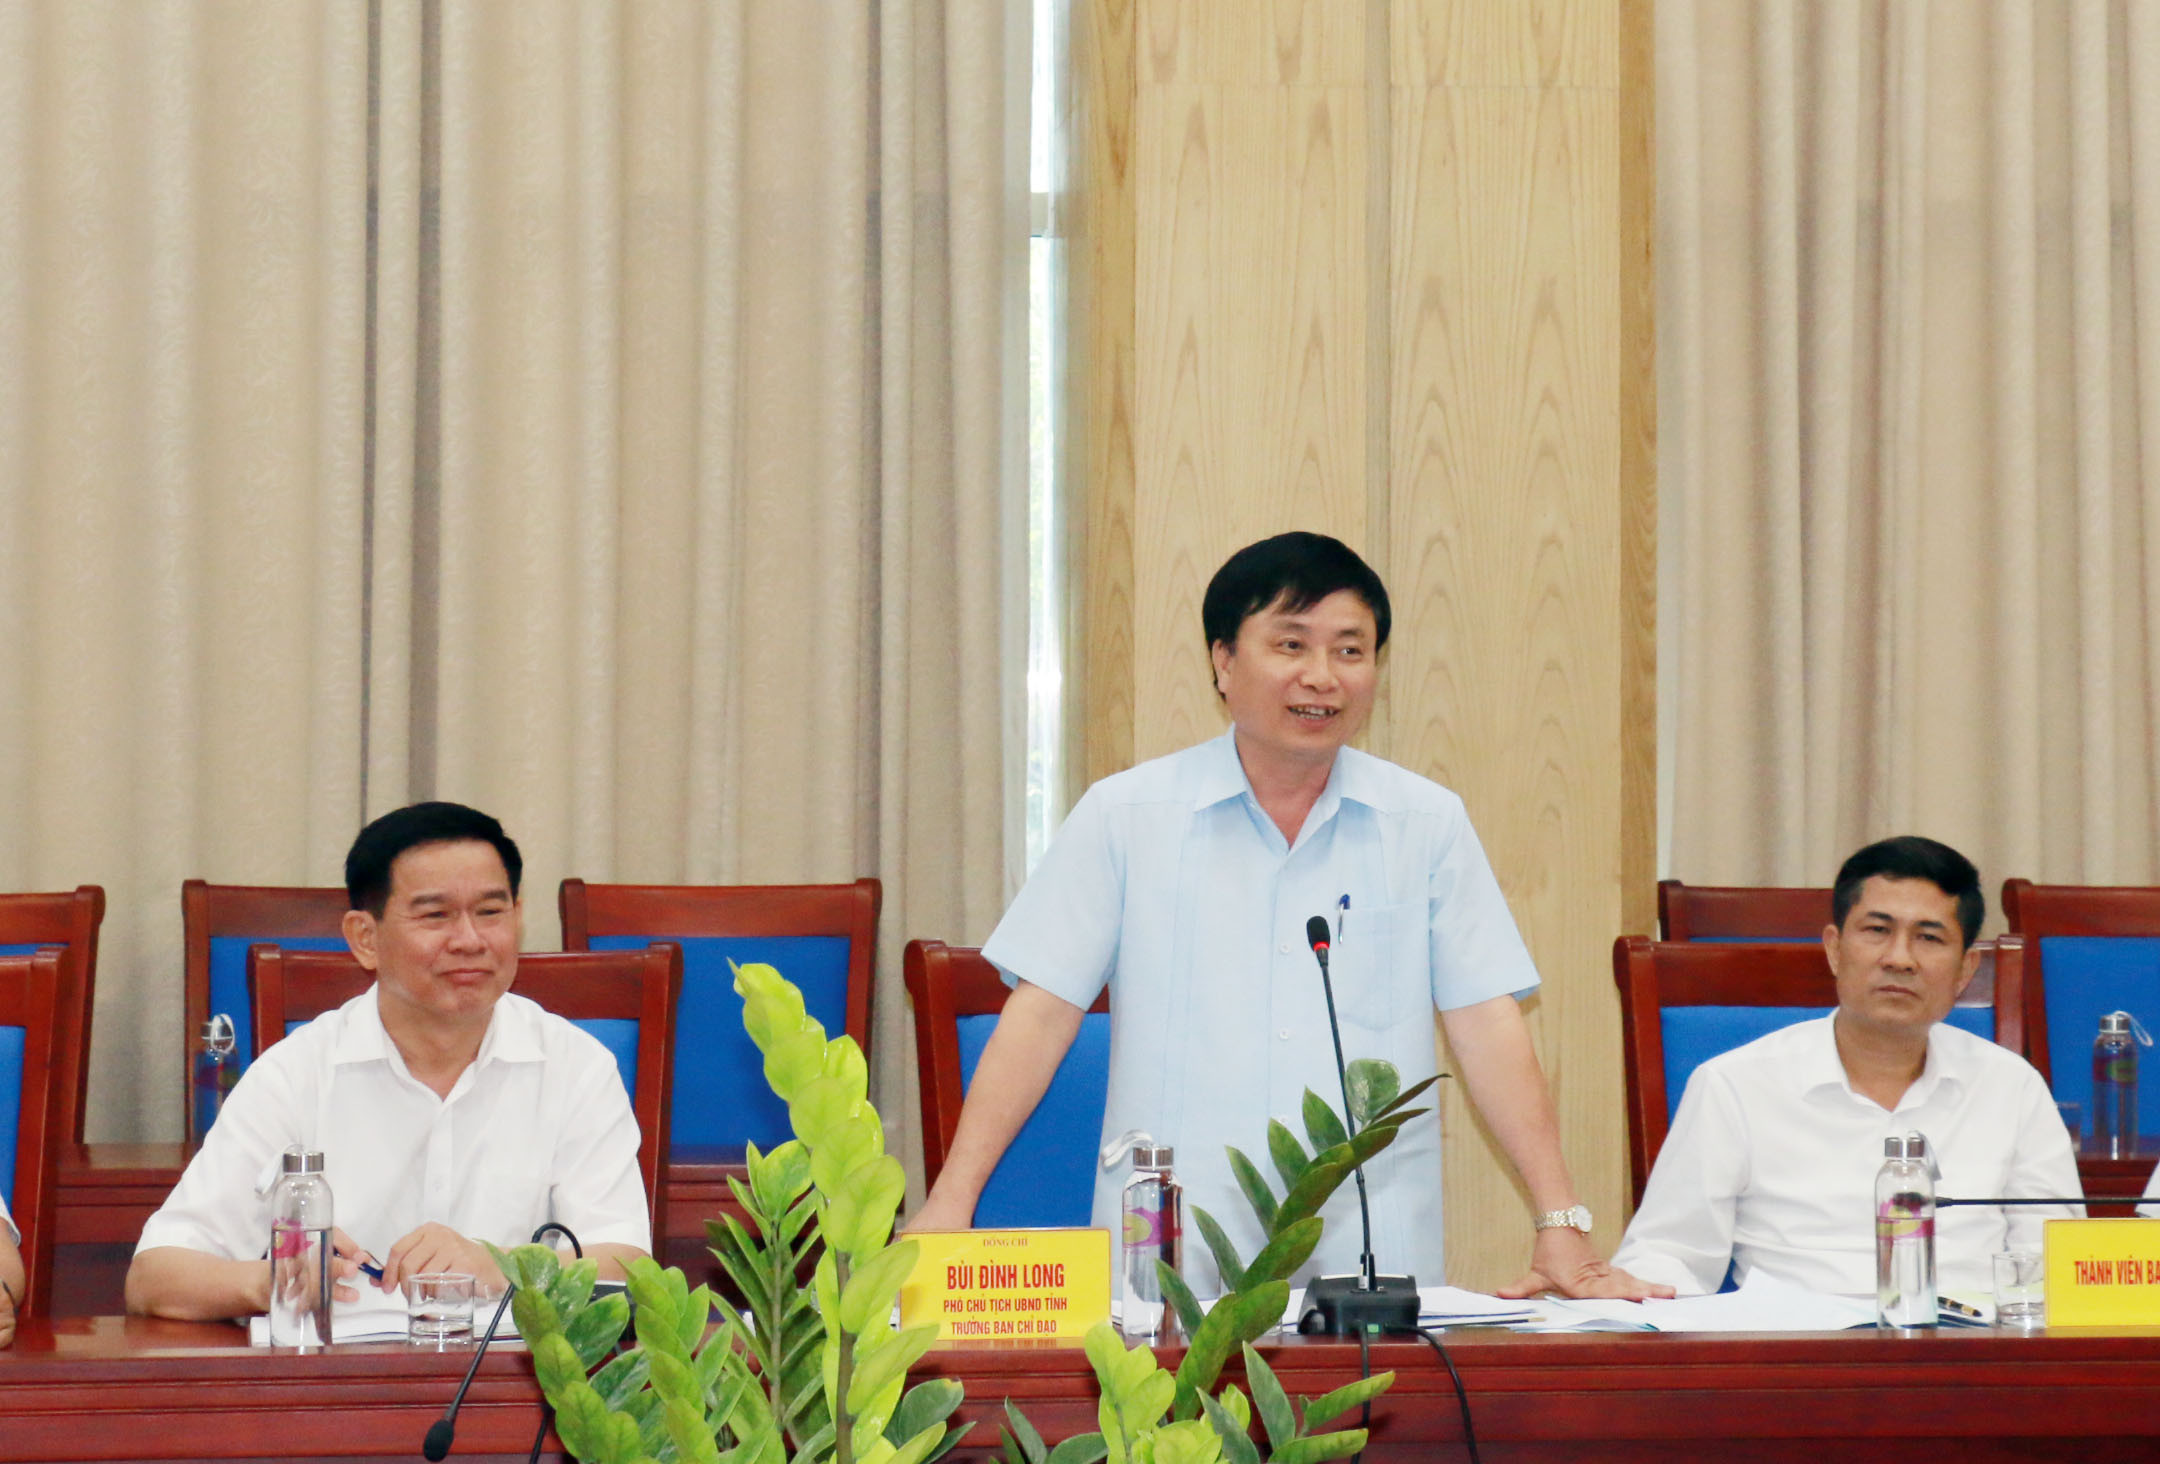 Đồng chí Phó Chủ tịch UBND tỉnh Bùi Đình Long phát biểu tại cuộc họp. Ảnh: Mỹ Hà